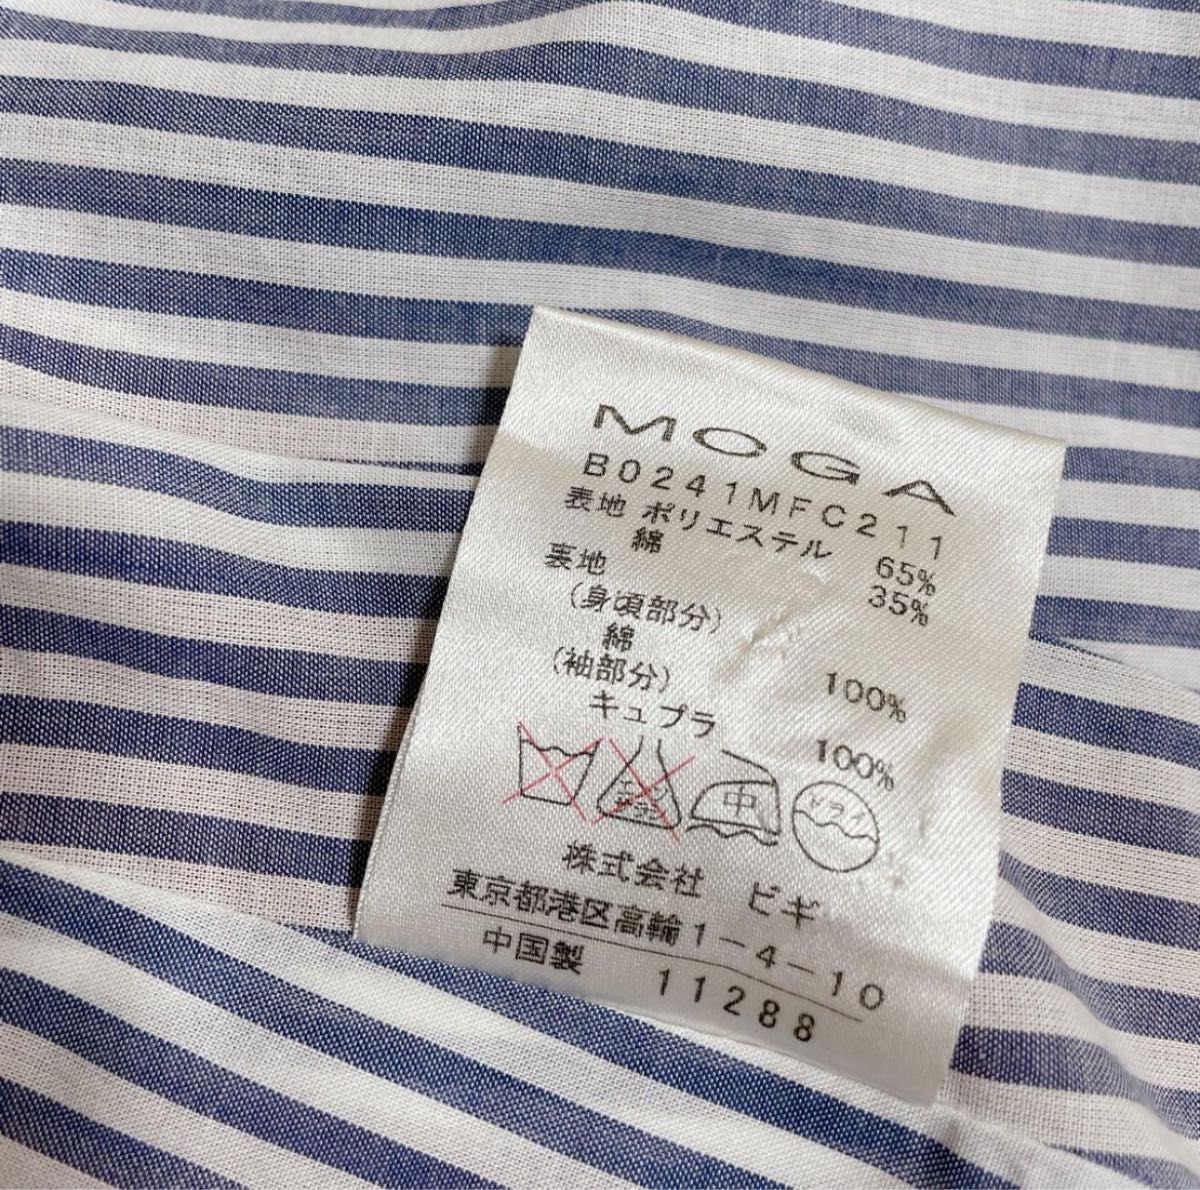 M.BLANC MOGA モガ スプリングコート ステンカラー コート ロングジャケット